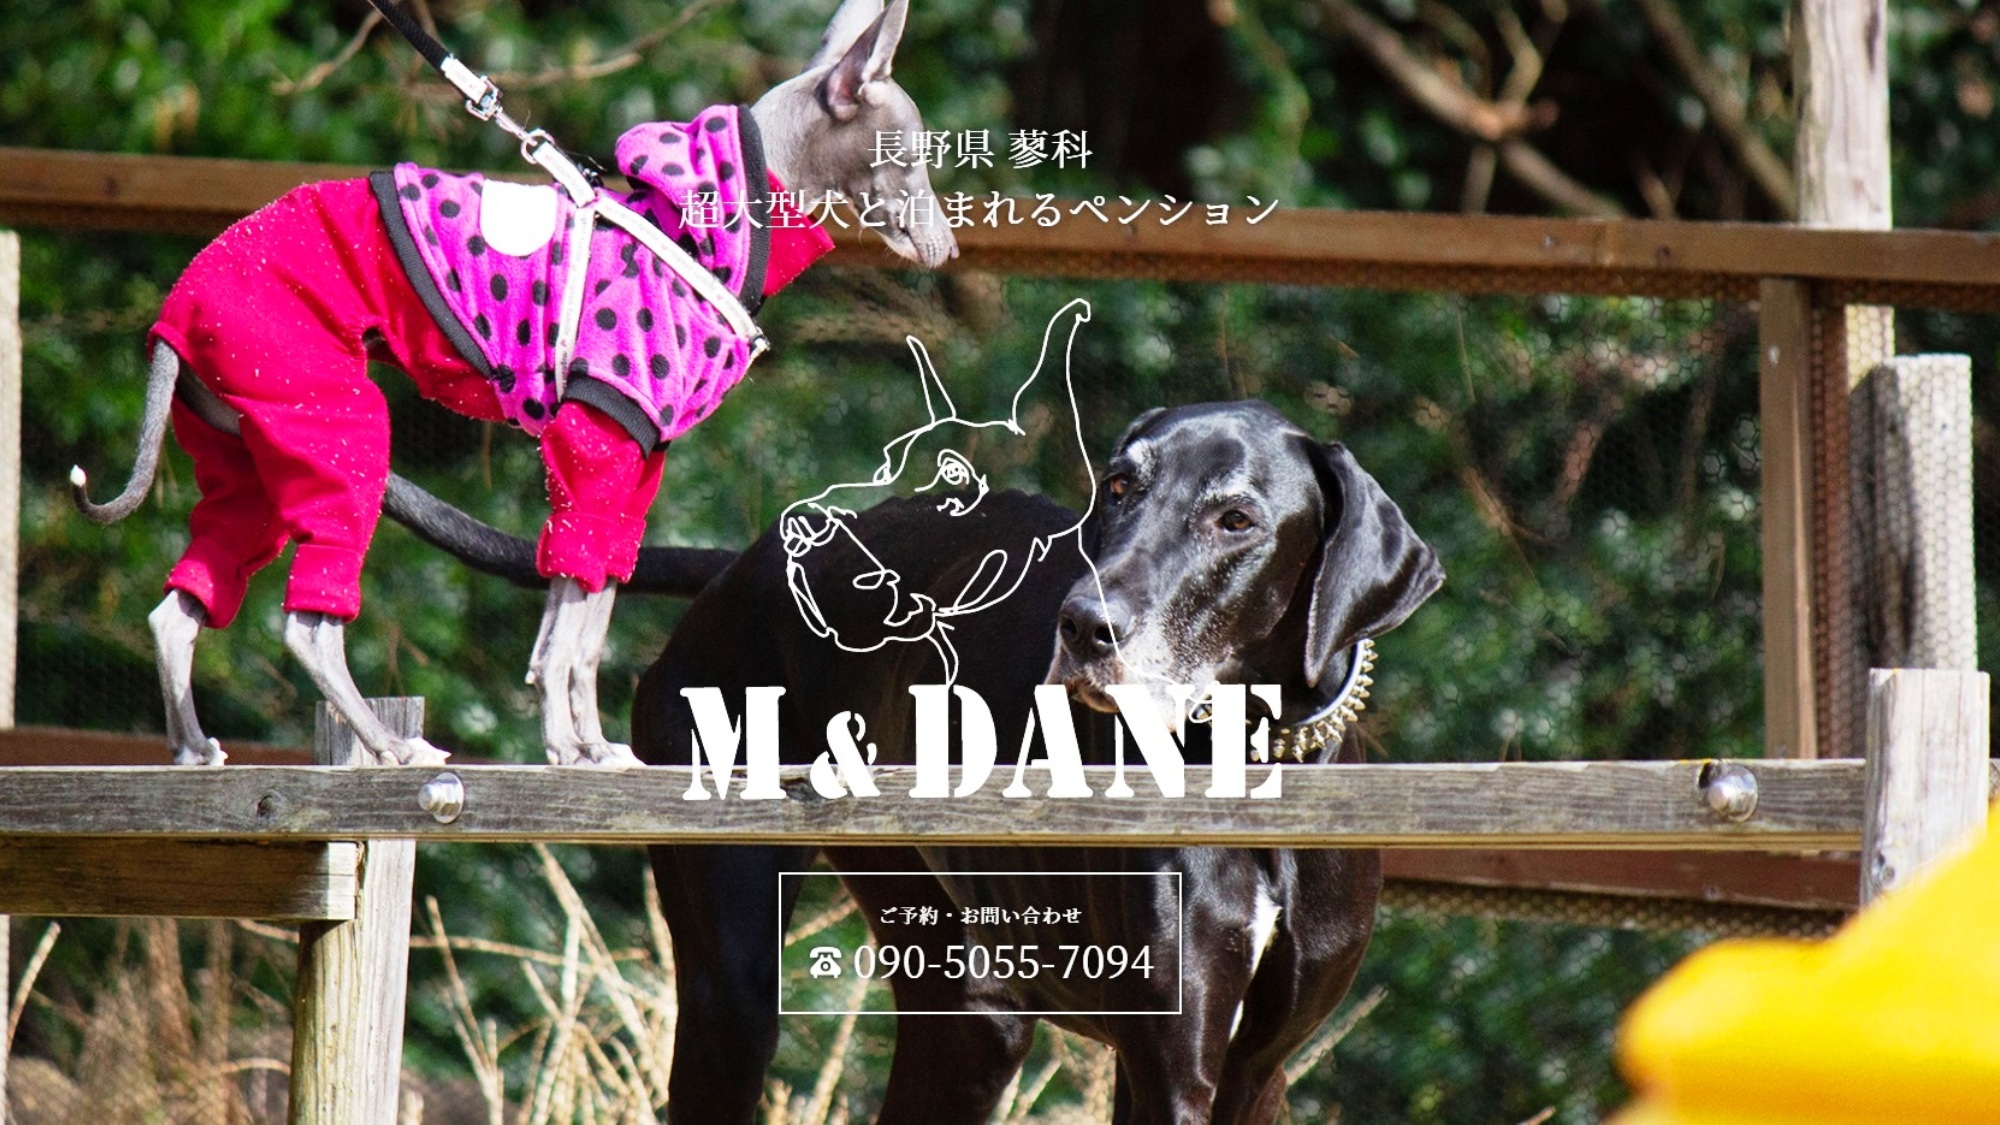 大型犬・超大型犬のためのペンション「M&DANE」愛犬との旅行をサポートします！